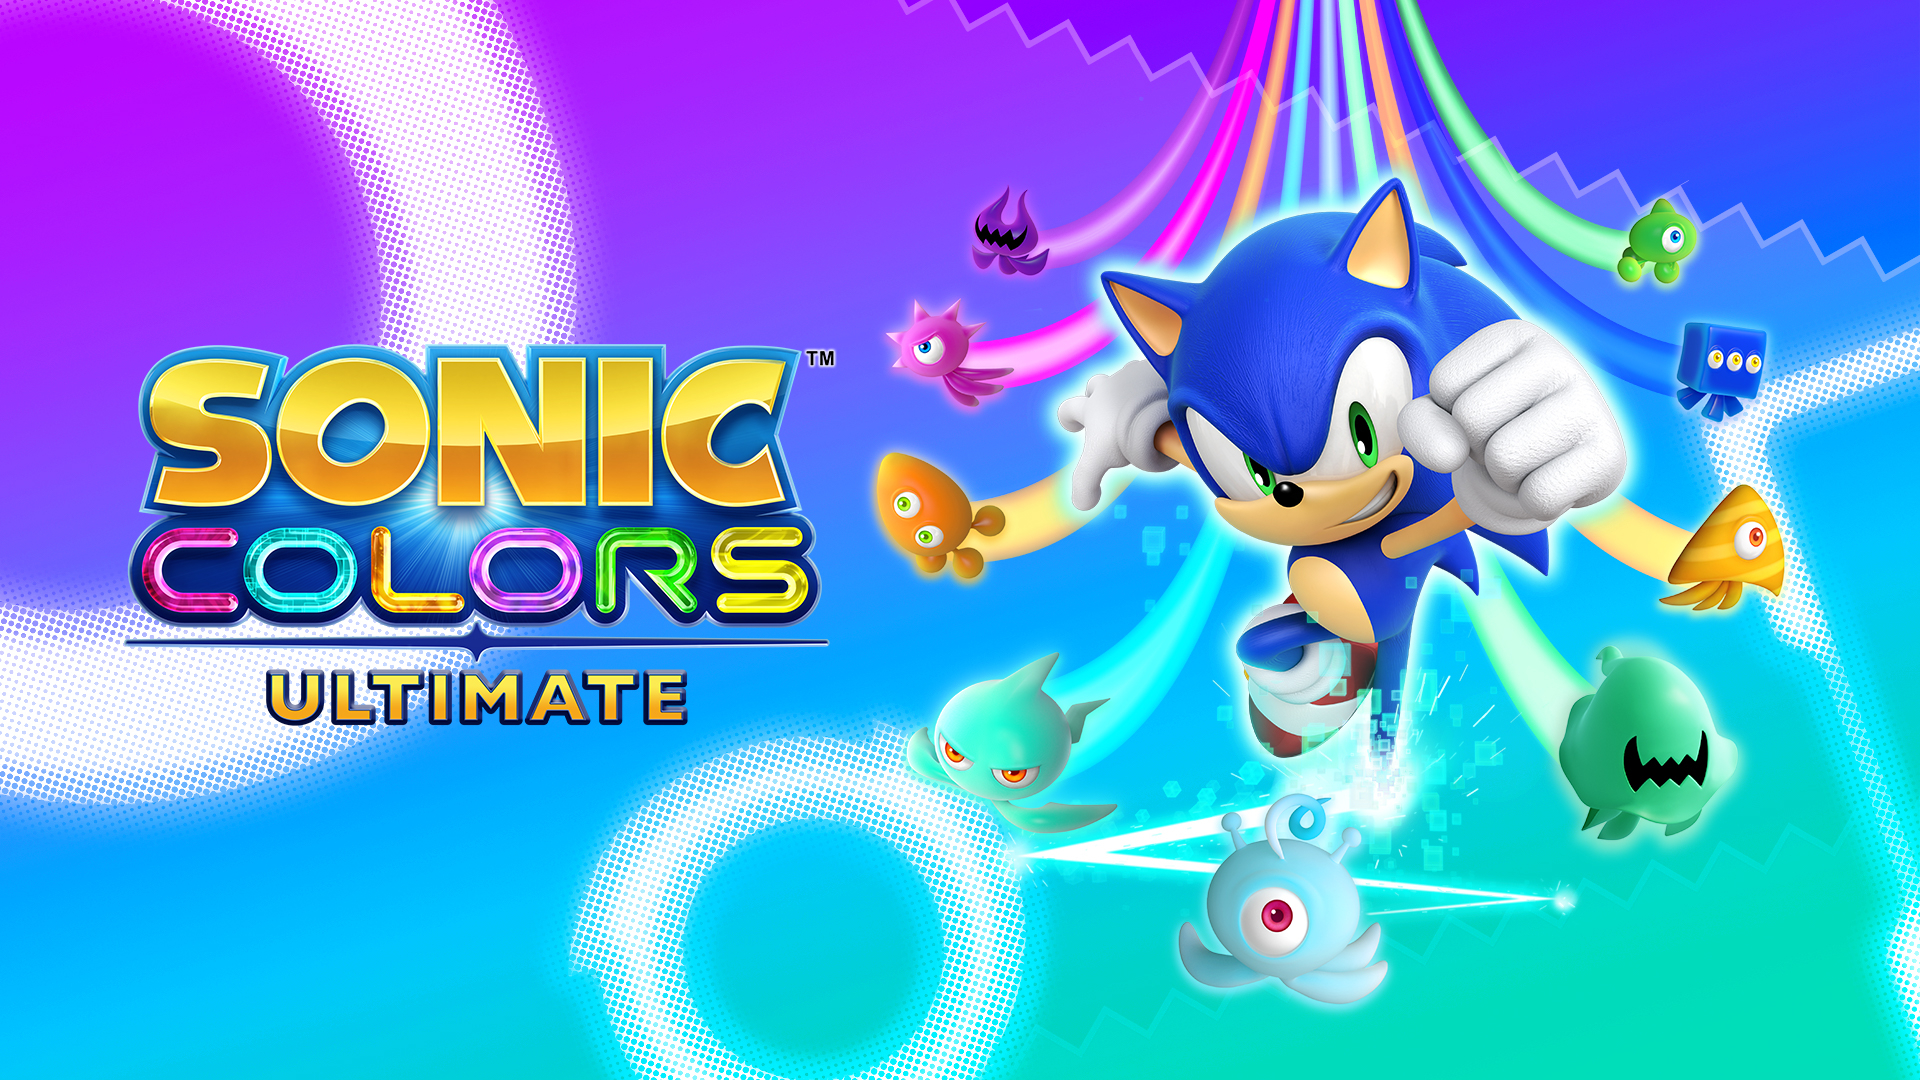 4К, 60 кадров/c и геймплейные новшества: трейлер с демонстрацией улучшений Sonic Colors: Ultimate